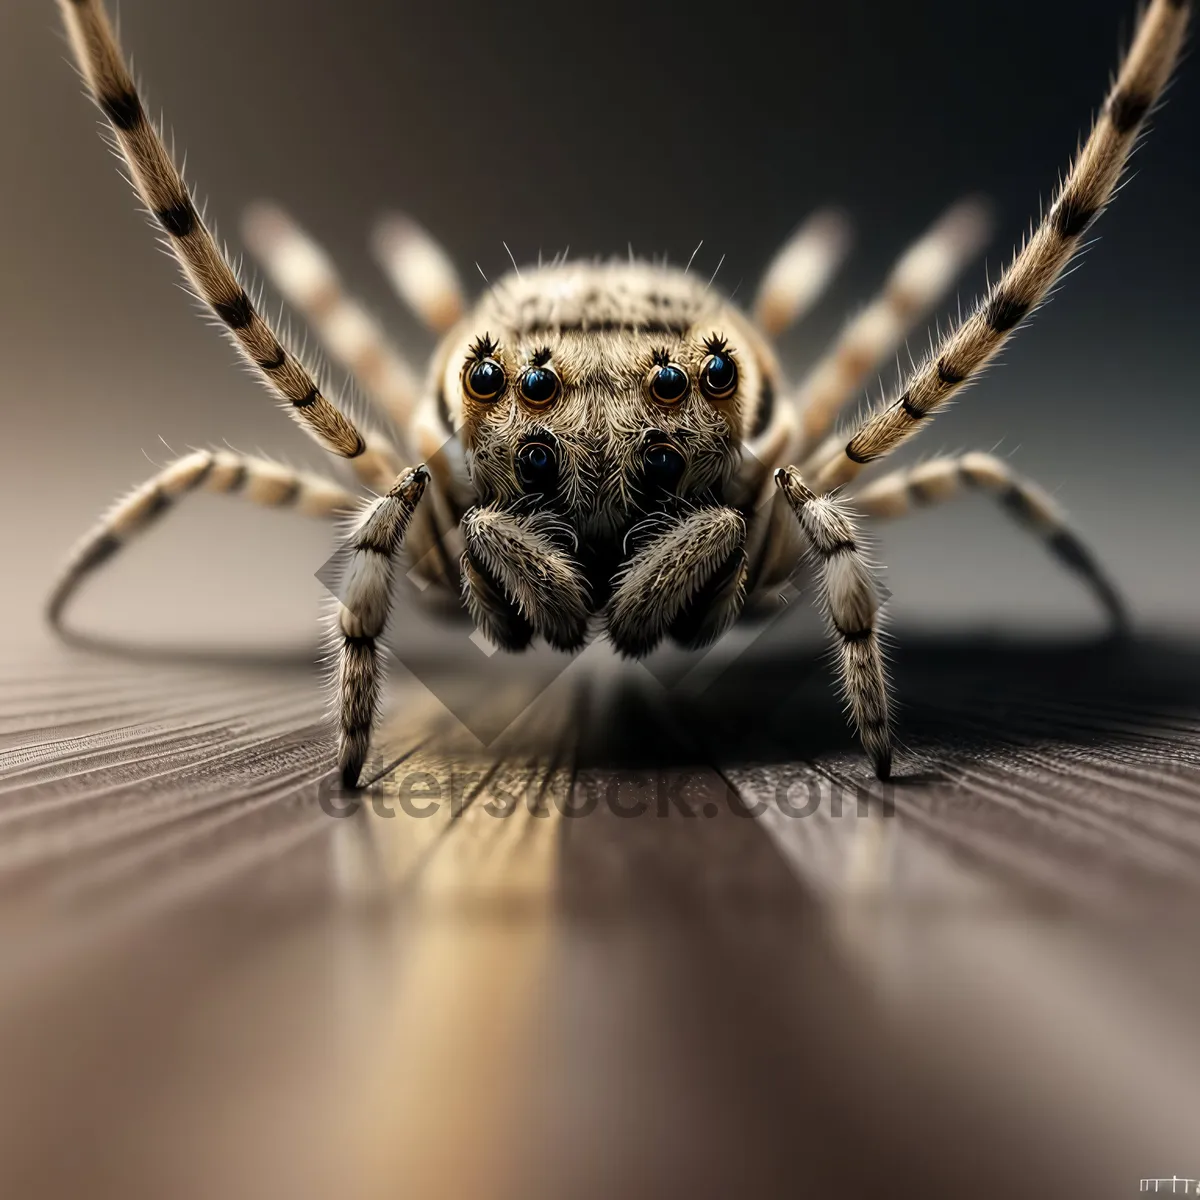 Picture of Garden Spider - Eerie Eight-Legged Arachnid in Web